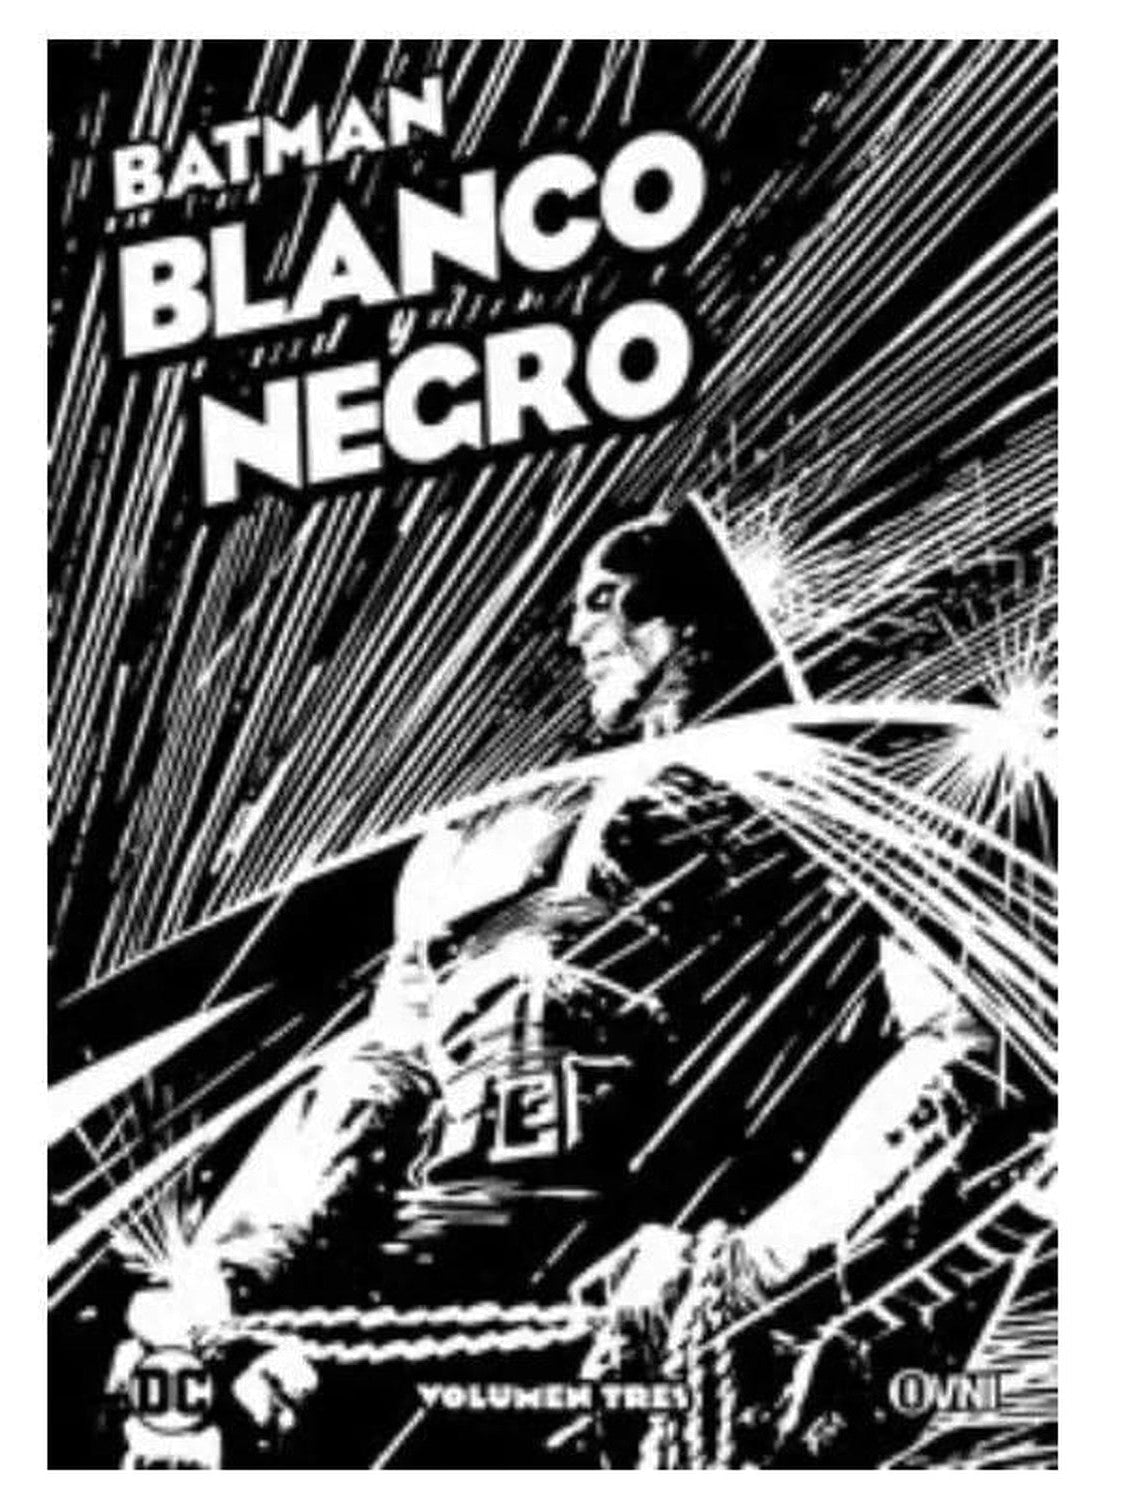 Batman: Blanco y Negro Vol. Tres